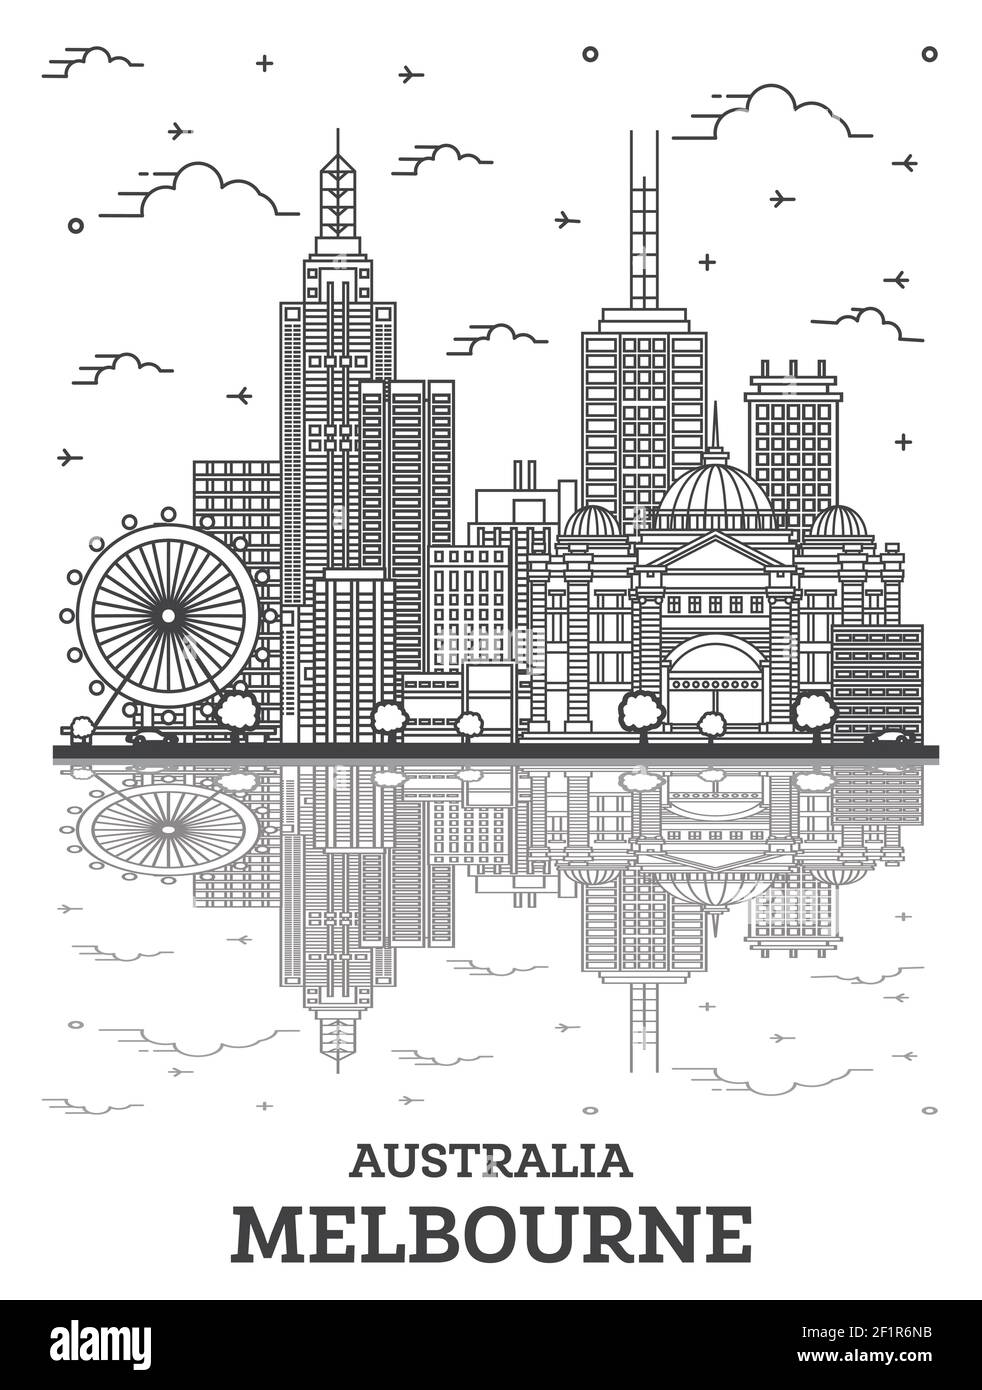 Umreißen Sie die Skyline von Melbourne Australia City mit modernen und historischen Gebäuden mit Reflektionen auf Weiß isoliert. Vektorgrafik. Melbourne Stock Vektor